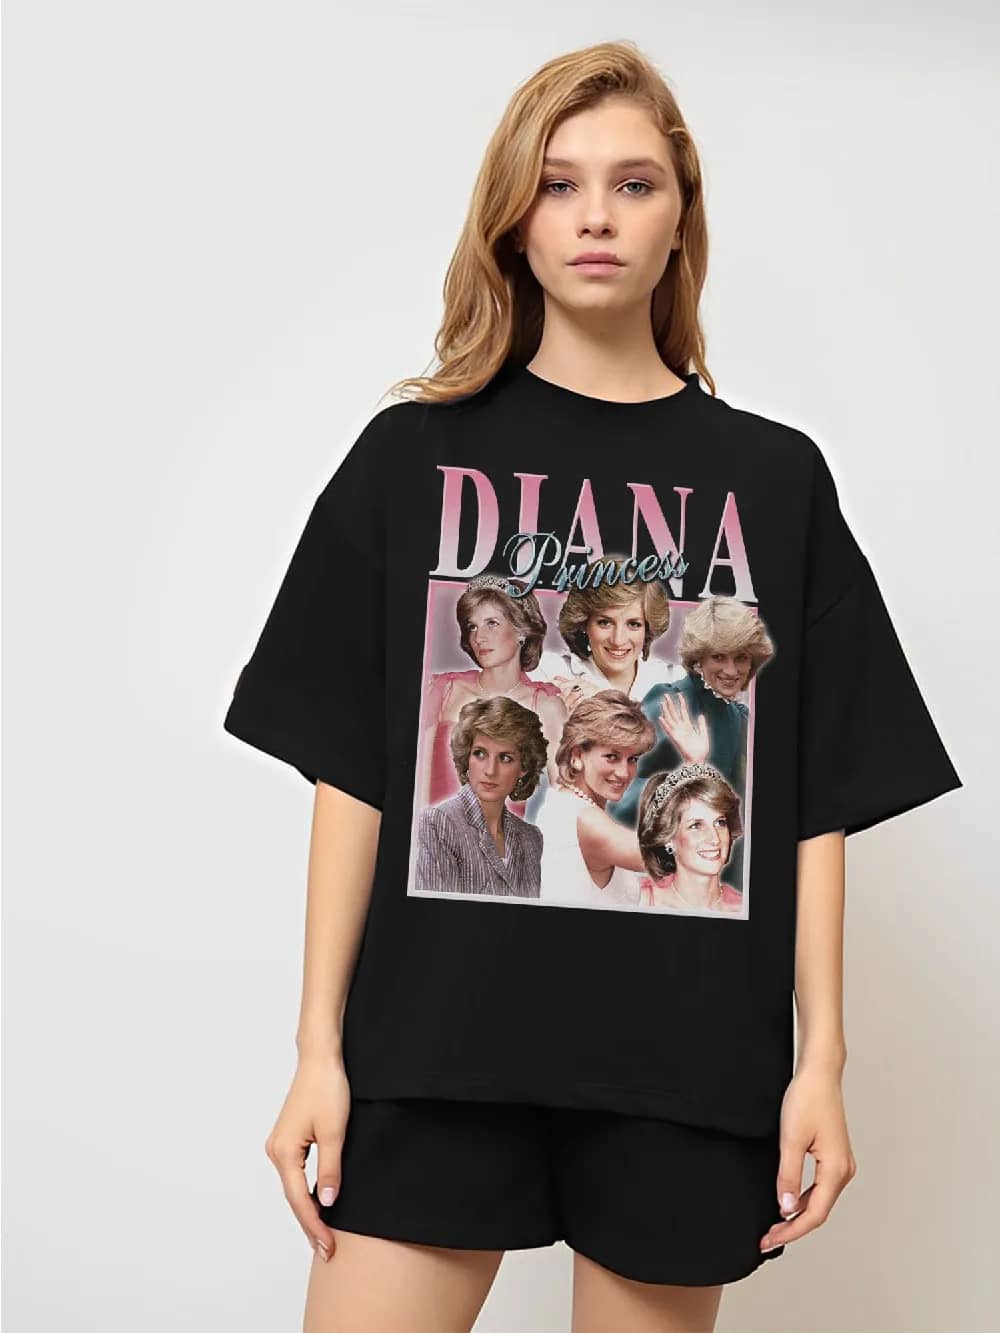 Inktee Store - Princess Diana Vintage Shirt - Diana Princess Of Wales - Charles British Royal England Princess Diana Retro - Vintage Princess Diana Fan Shirt Image